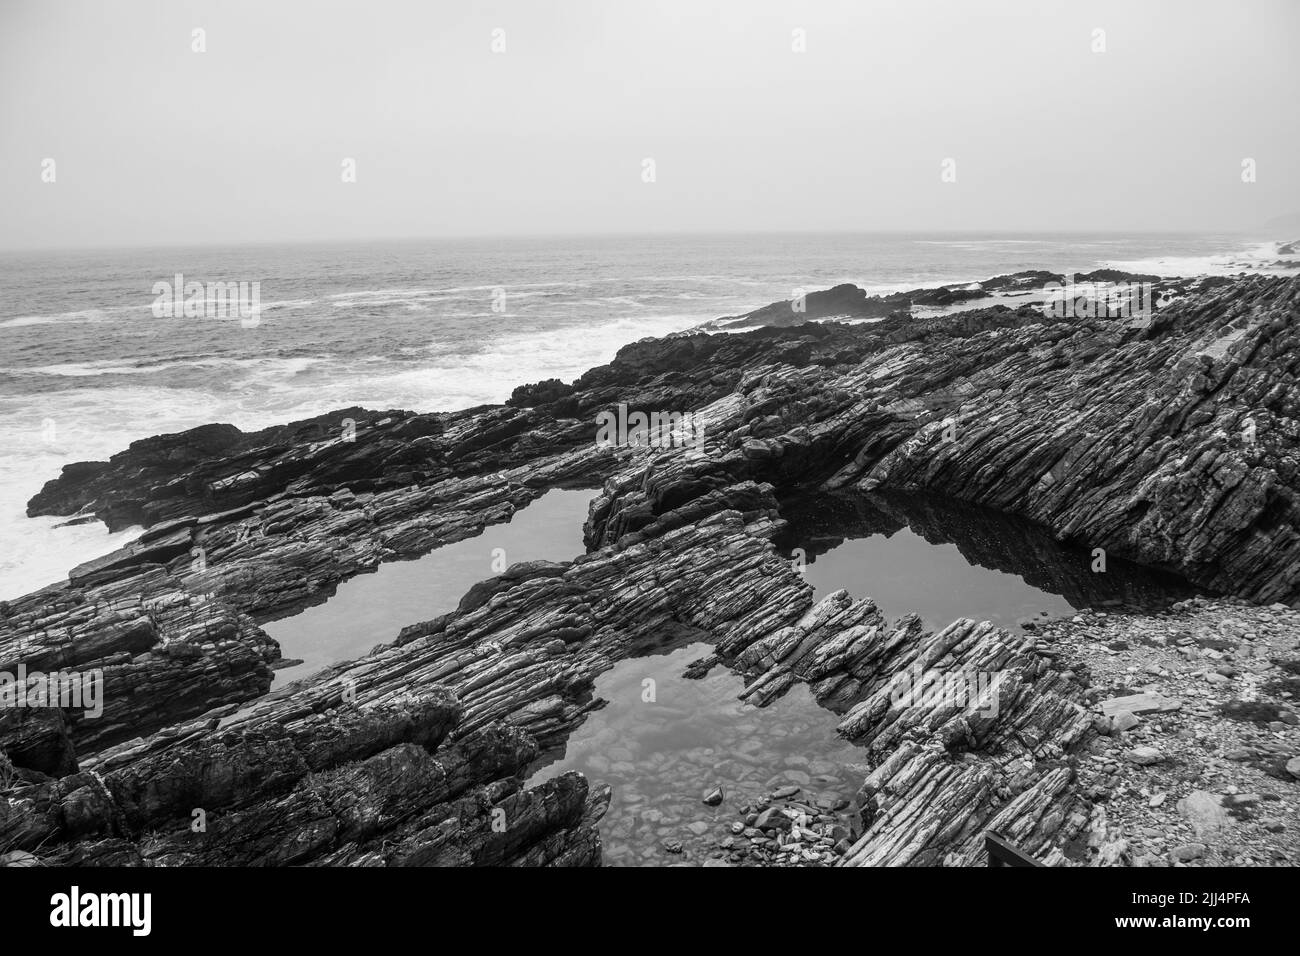 Marismas abrigadas a lo largo de los estratos rocosos dentados e inclinados de la costa de Tsitsikamma, Sudáfrica, en blanco y negro Foto de stock